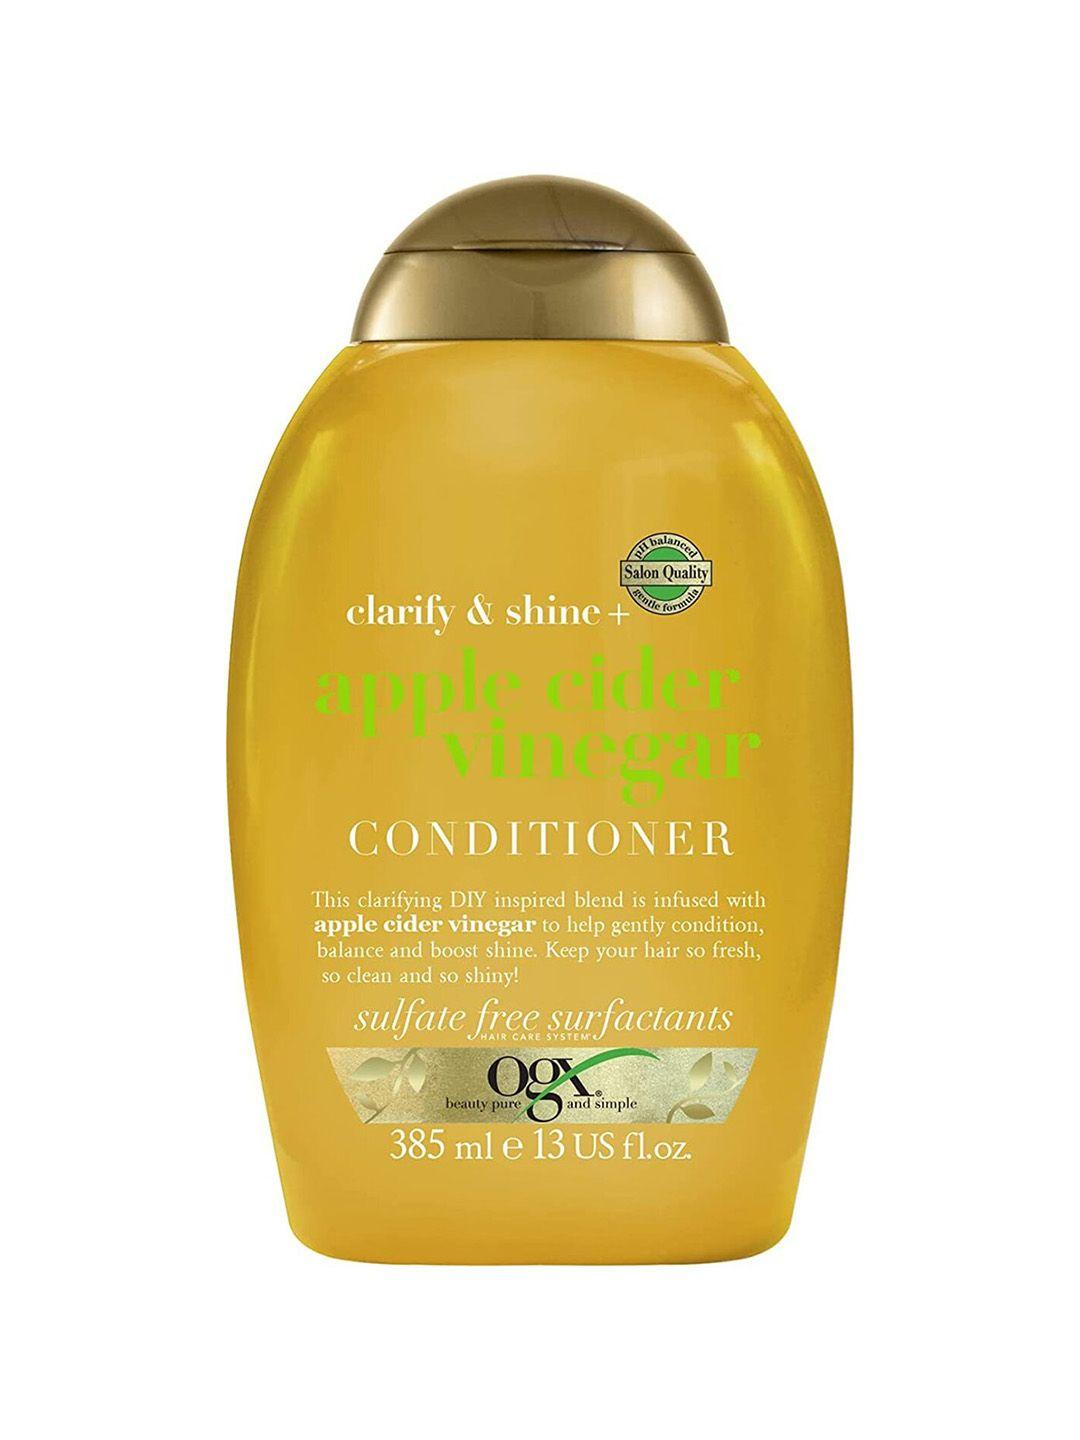 ogx clarify & shine apple cider vinegar conditioner to boost hair shine - 385 ml